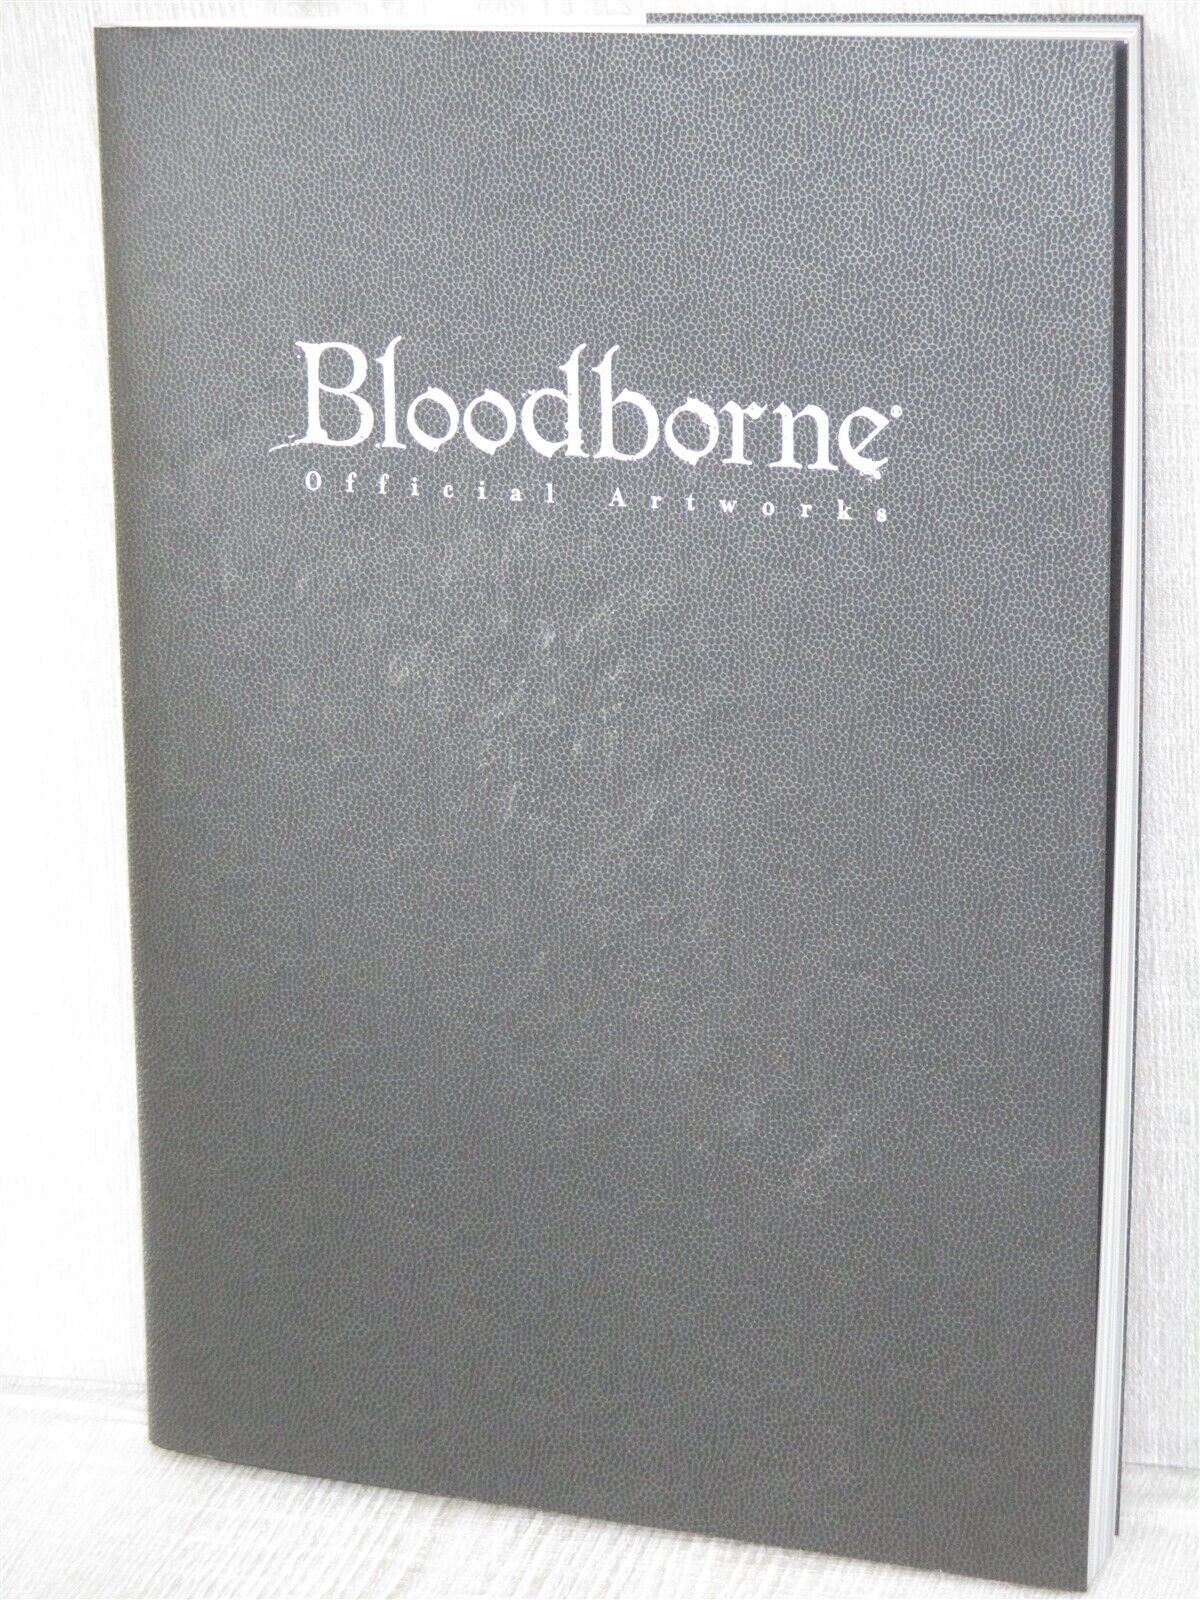 BLOODBORNE Official Art Works Sony PS4 Fan Book 2016 Japan KD83